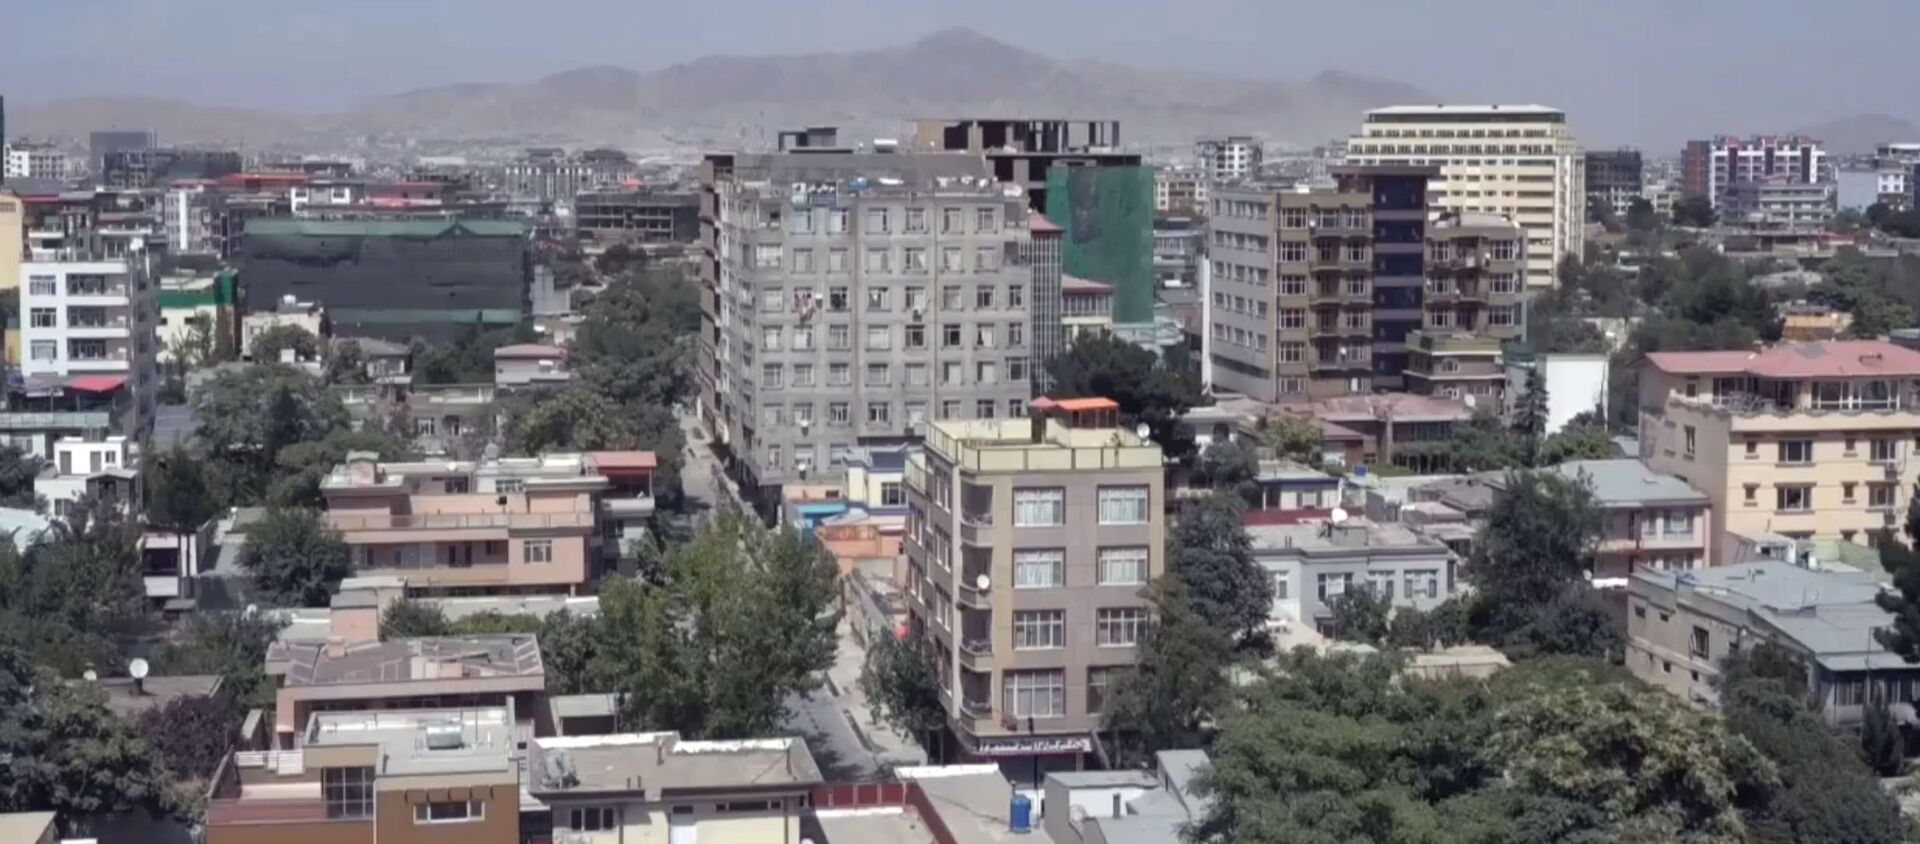 LIVE_СПУТНИК: Вид на панораму Кабула после того, как талибы восстановили контроль над страной - Sputnik Кыргызстан, 1920